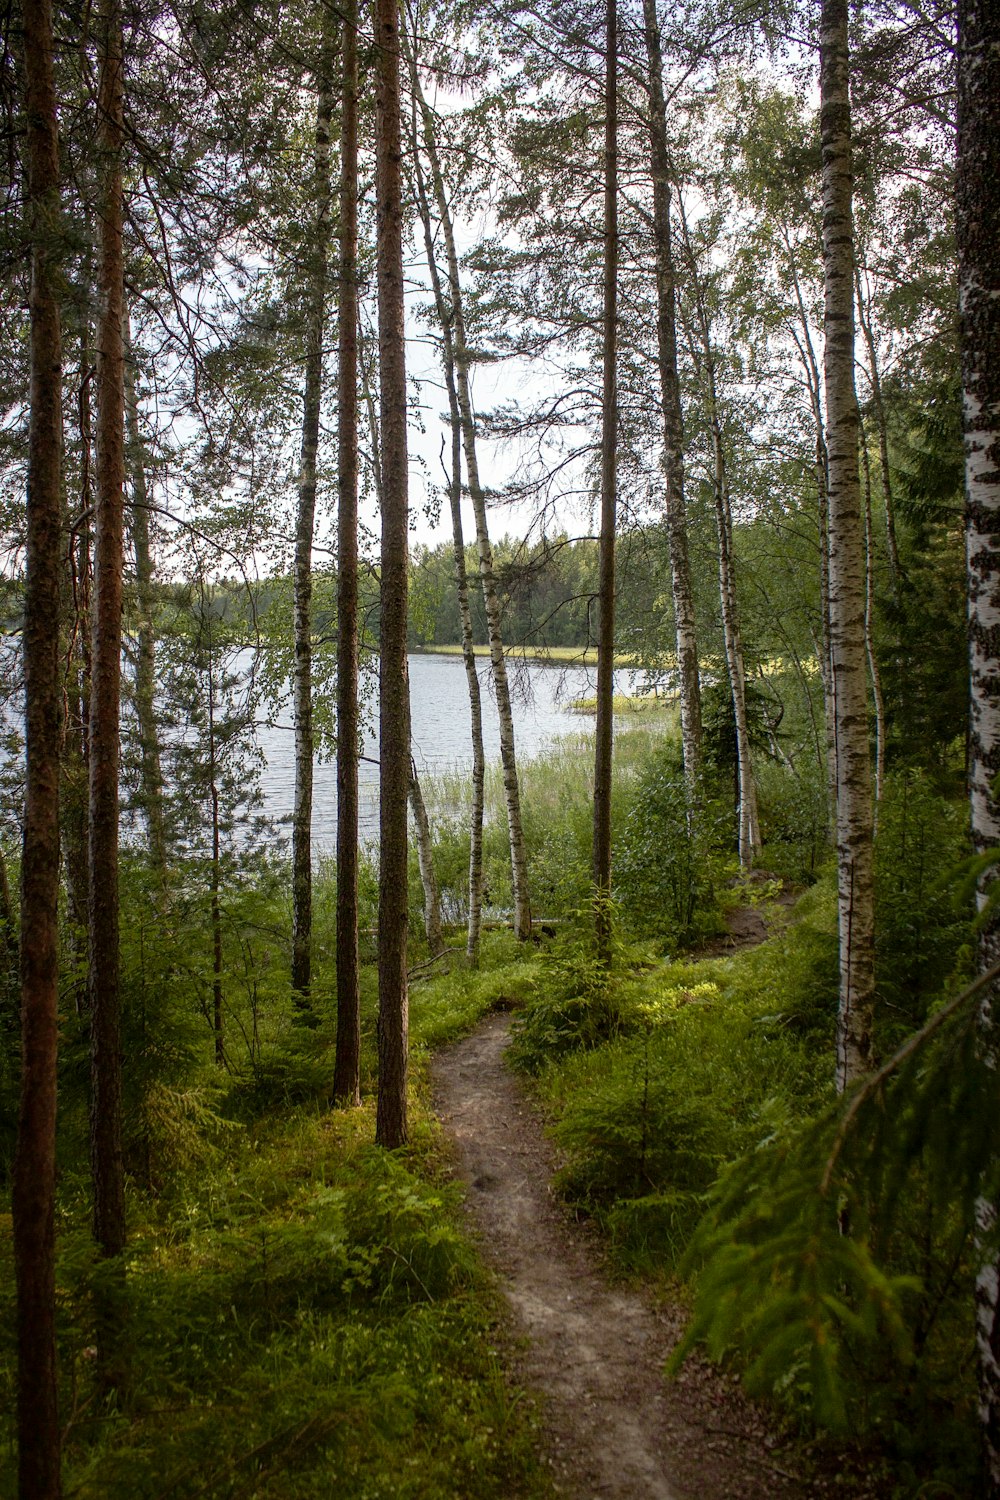 trilhas de terra ladeadas de árvores em direção ao lago